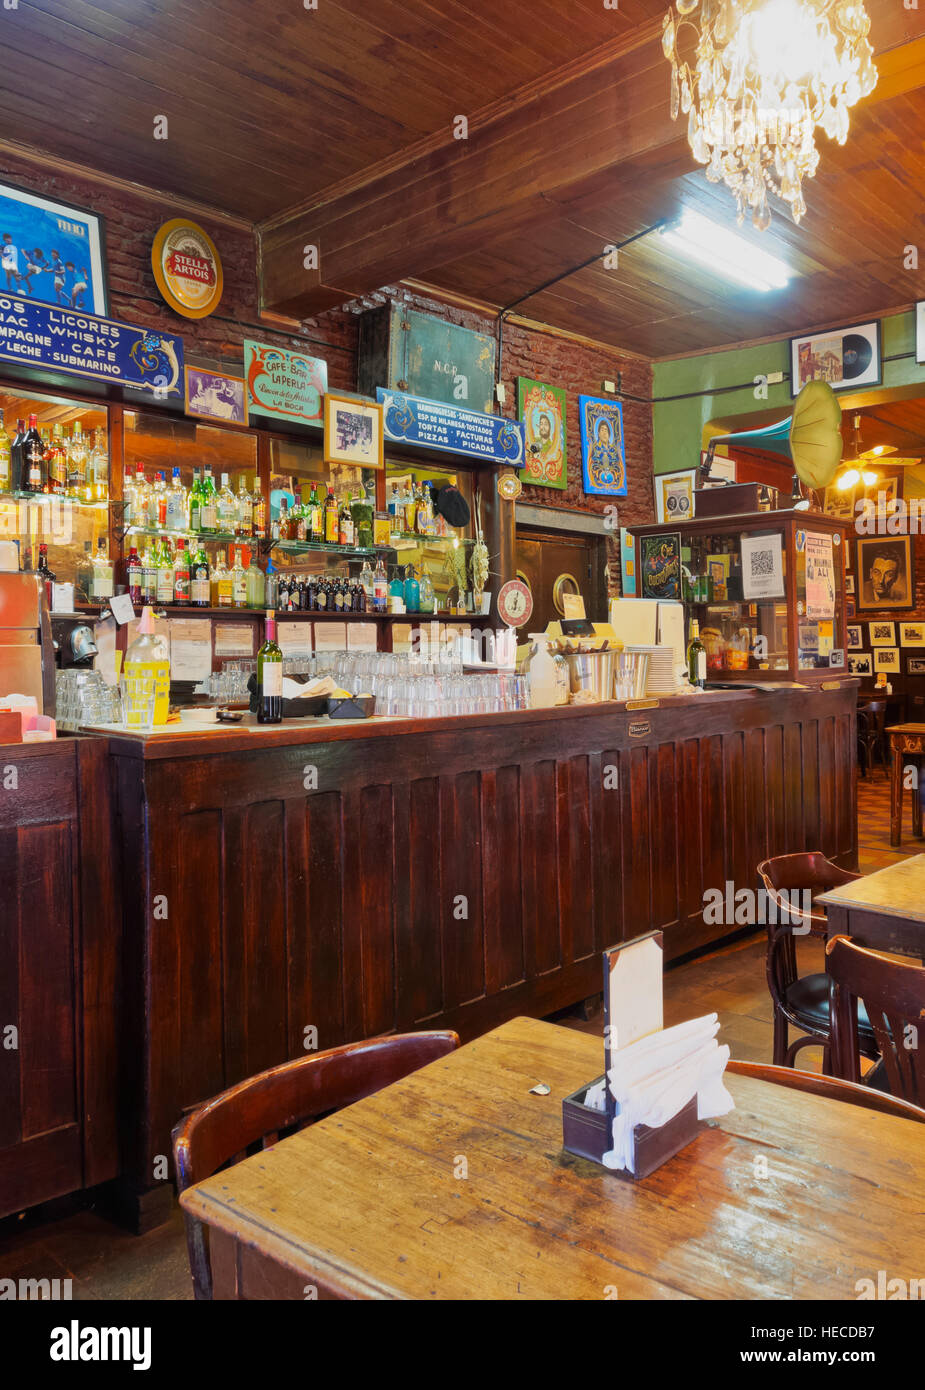 Argentina, Buenos Aires, La Boca, vista interna del cafe bar La Perla. Foto Stock